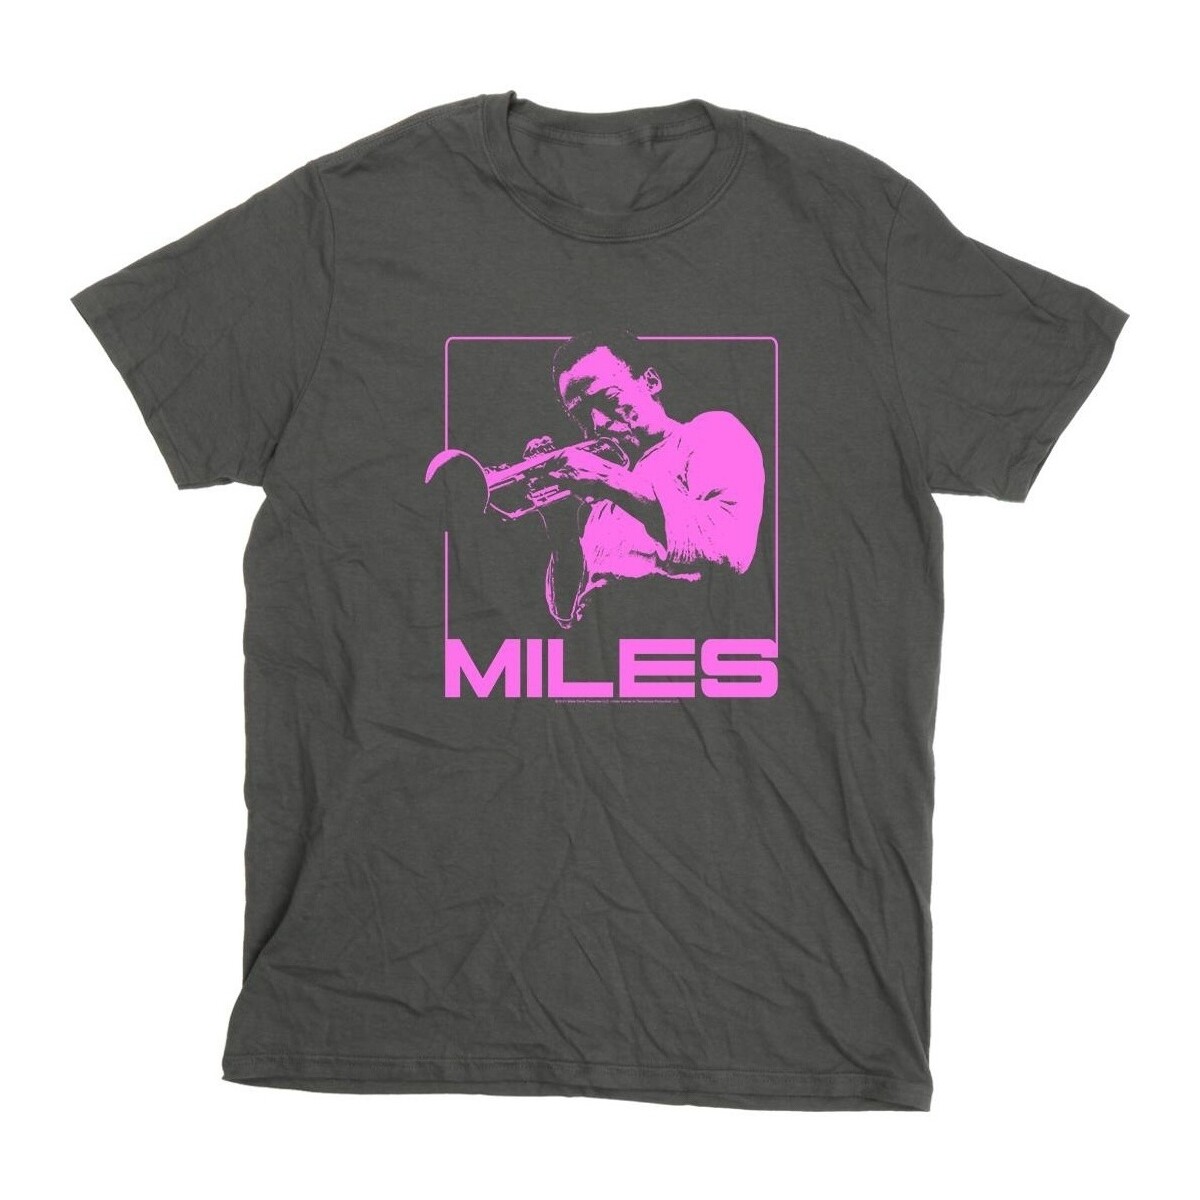 Vêtements Homme T-shirts manches longues Miles Davis Pink Square Multicolore